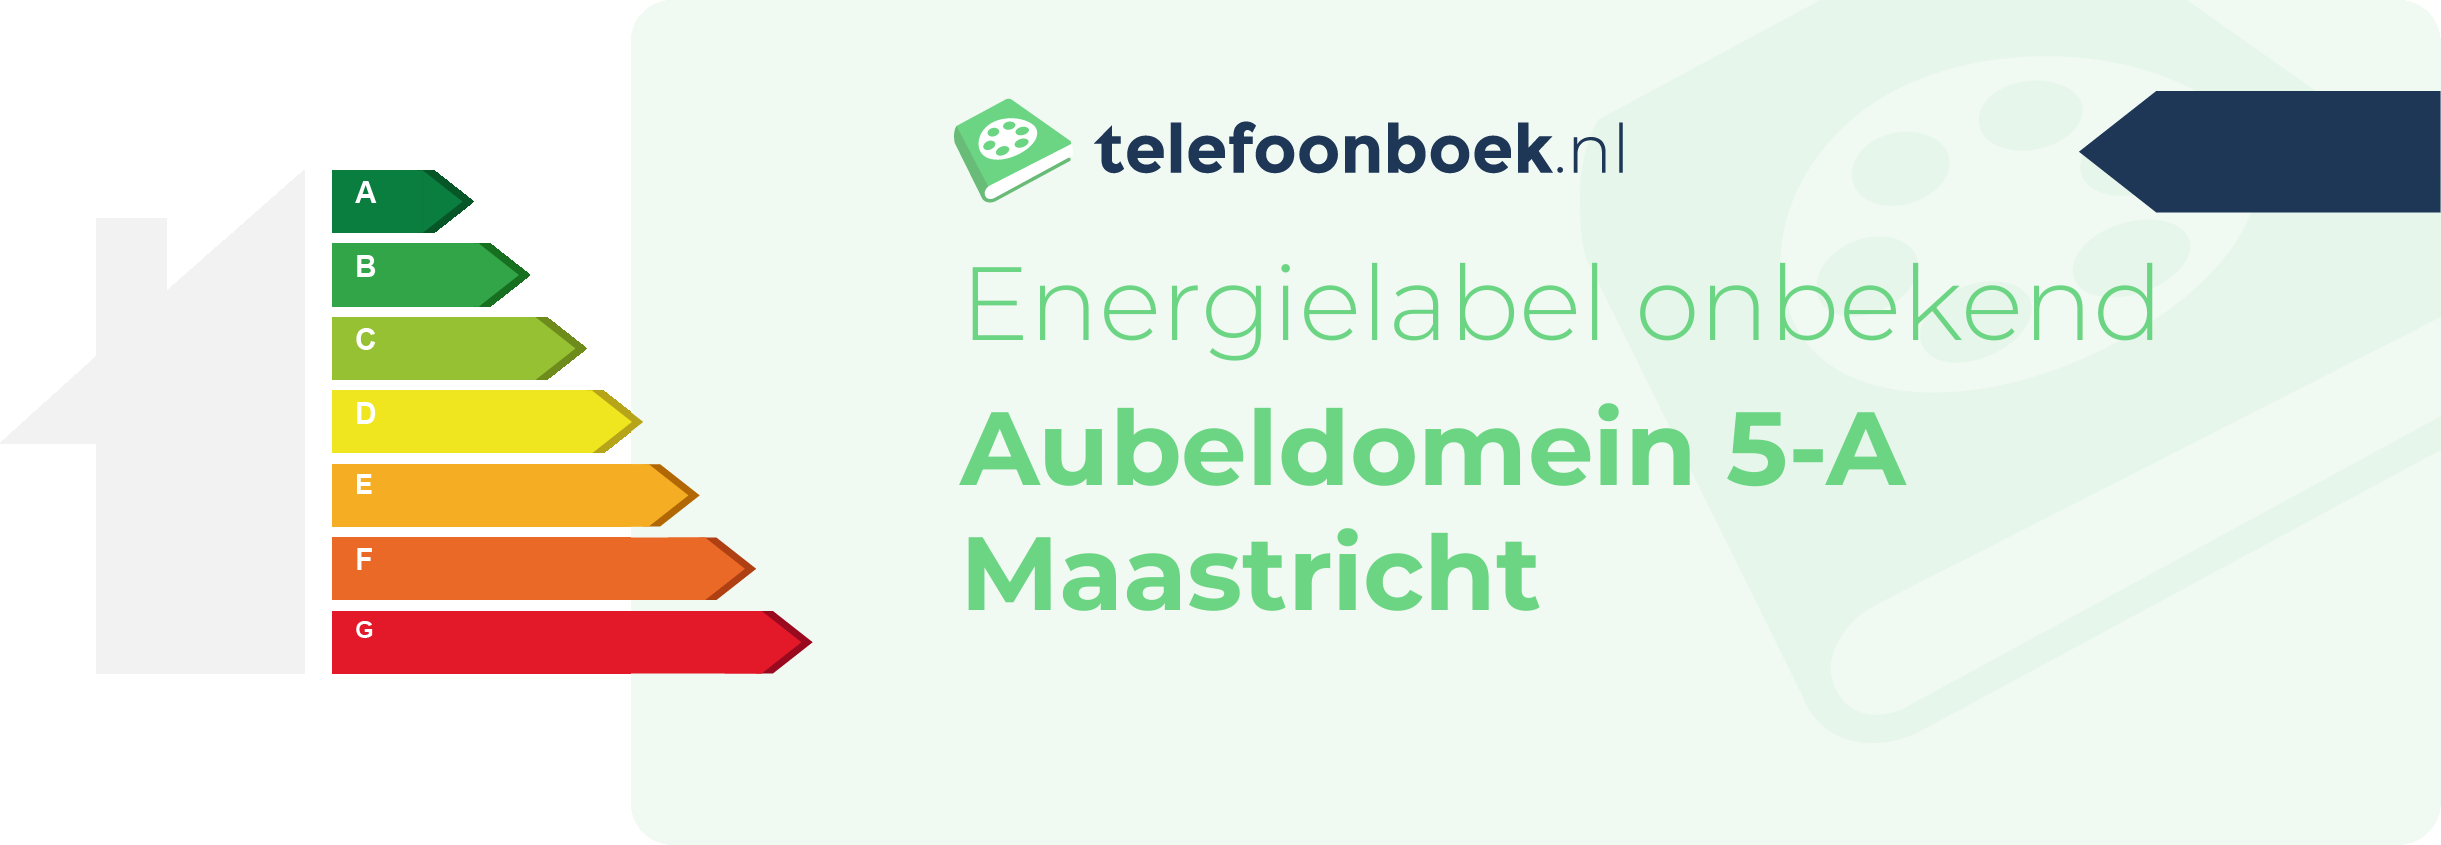 Energielabel Aubeldomein 5-A Maastricht